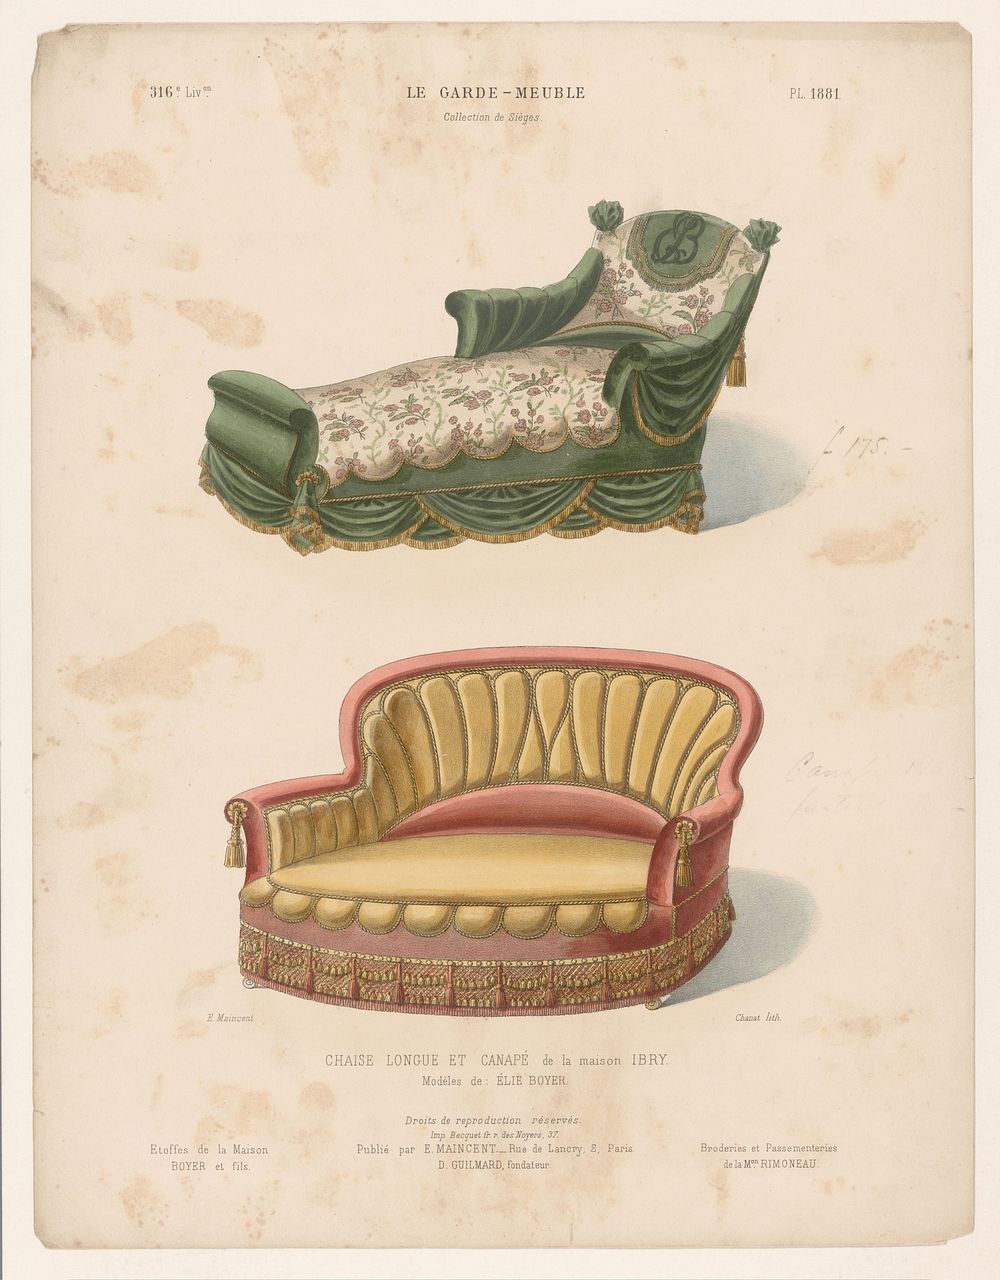 Chaise longue en canapé (1885 - 1895) by Chanat, Becquet frères, Eugène Maincent and Désiré Guilmard